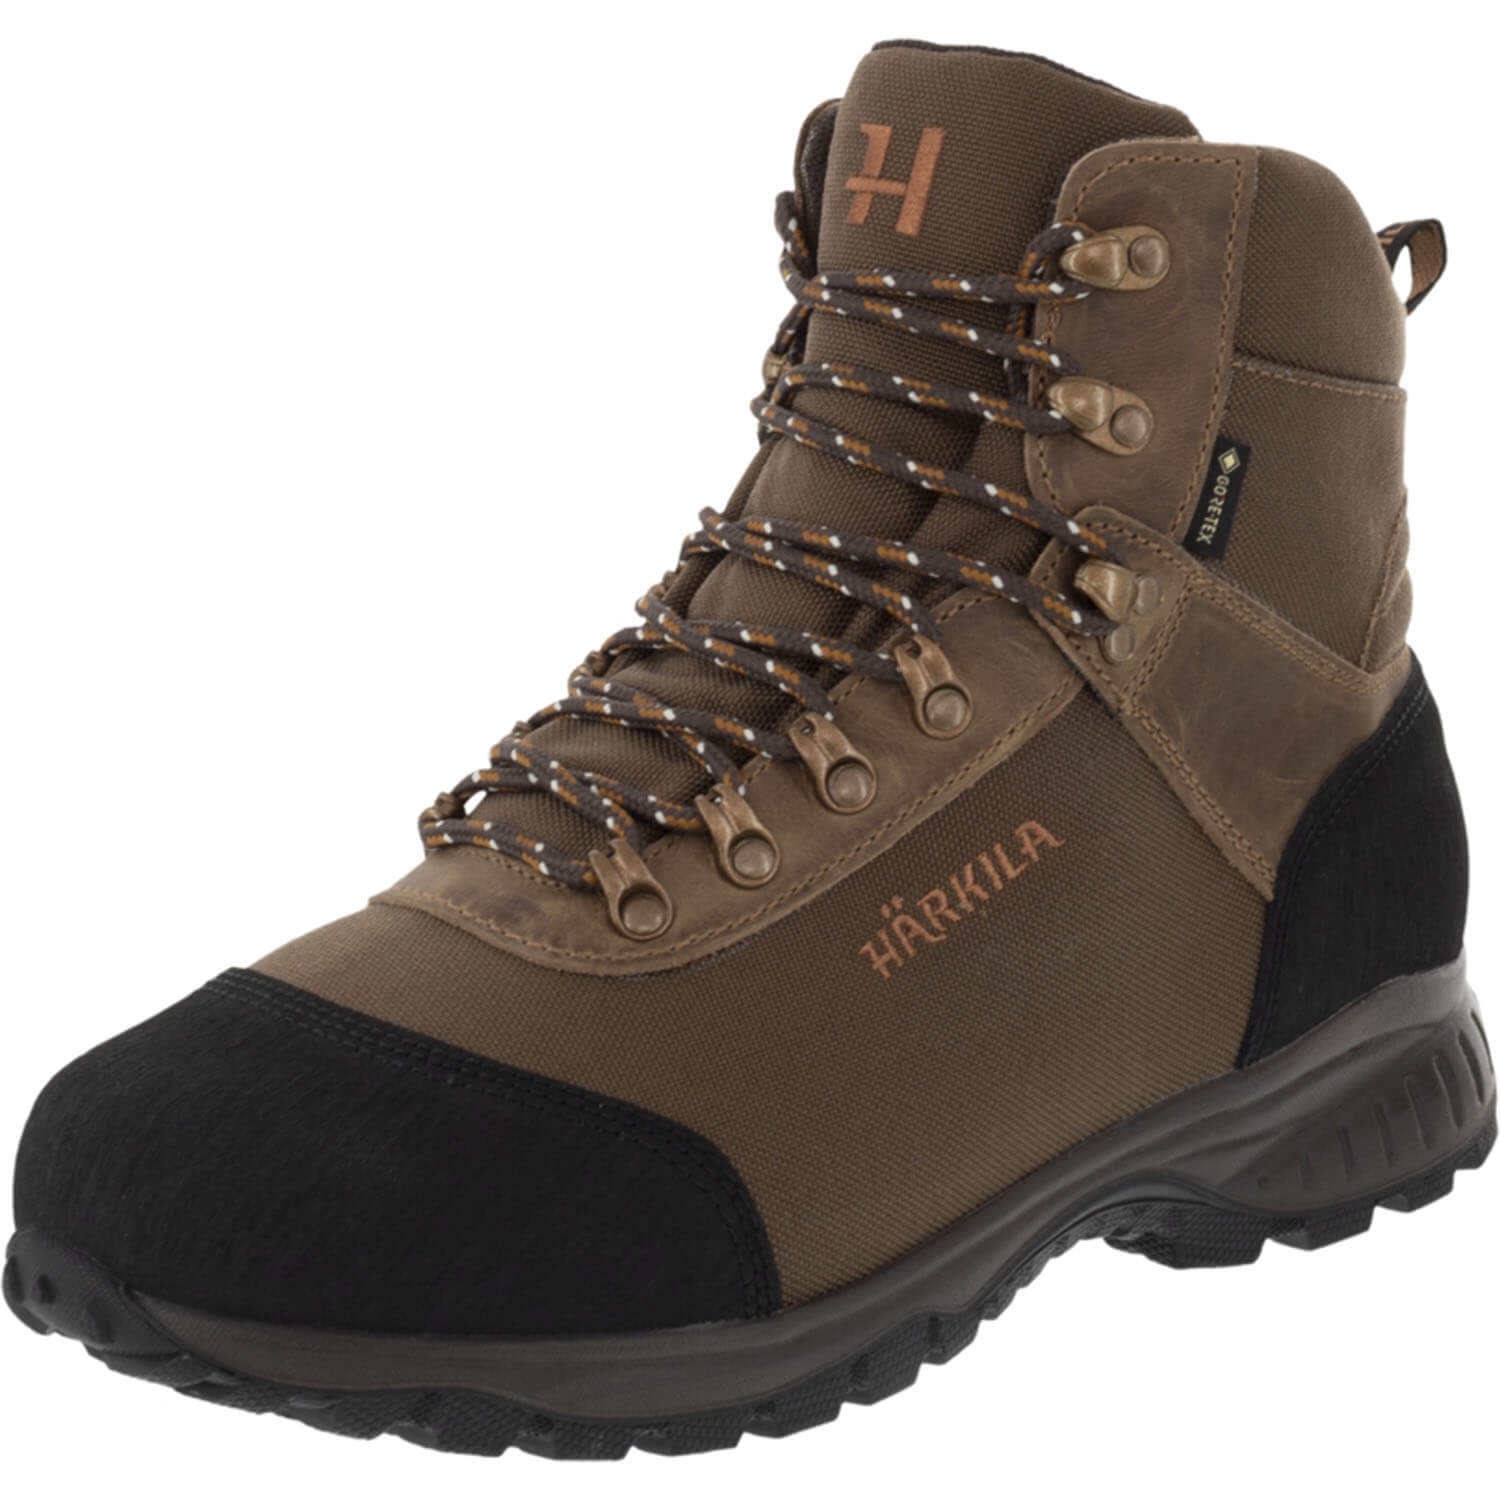 Härkila hunting boots wildwood GTX - Footwear